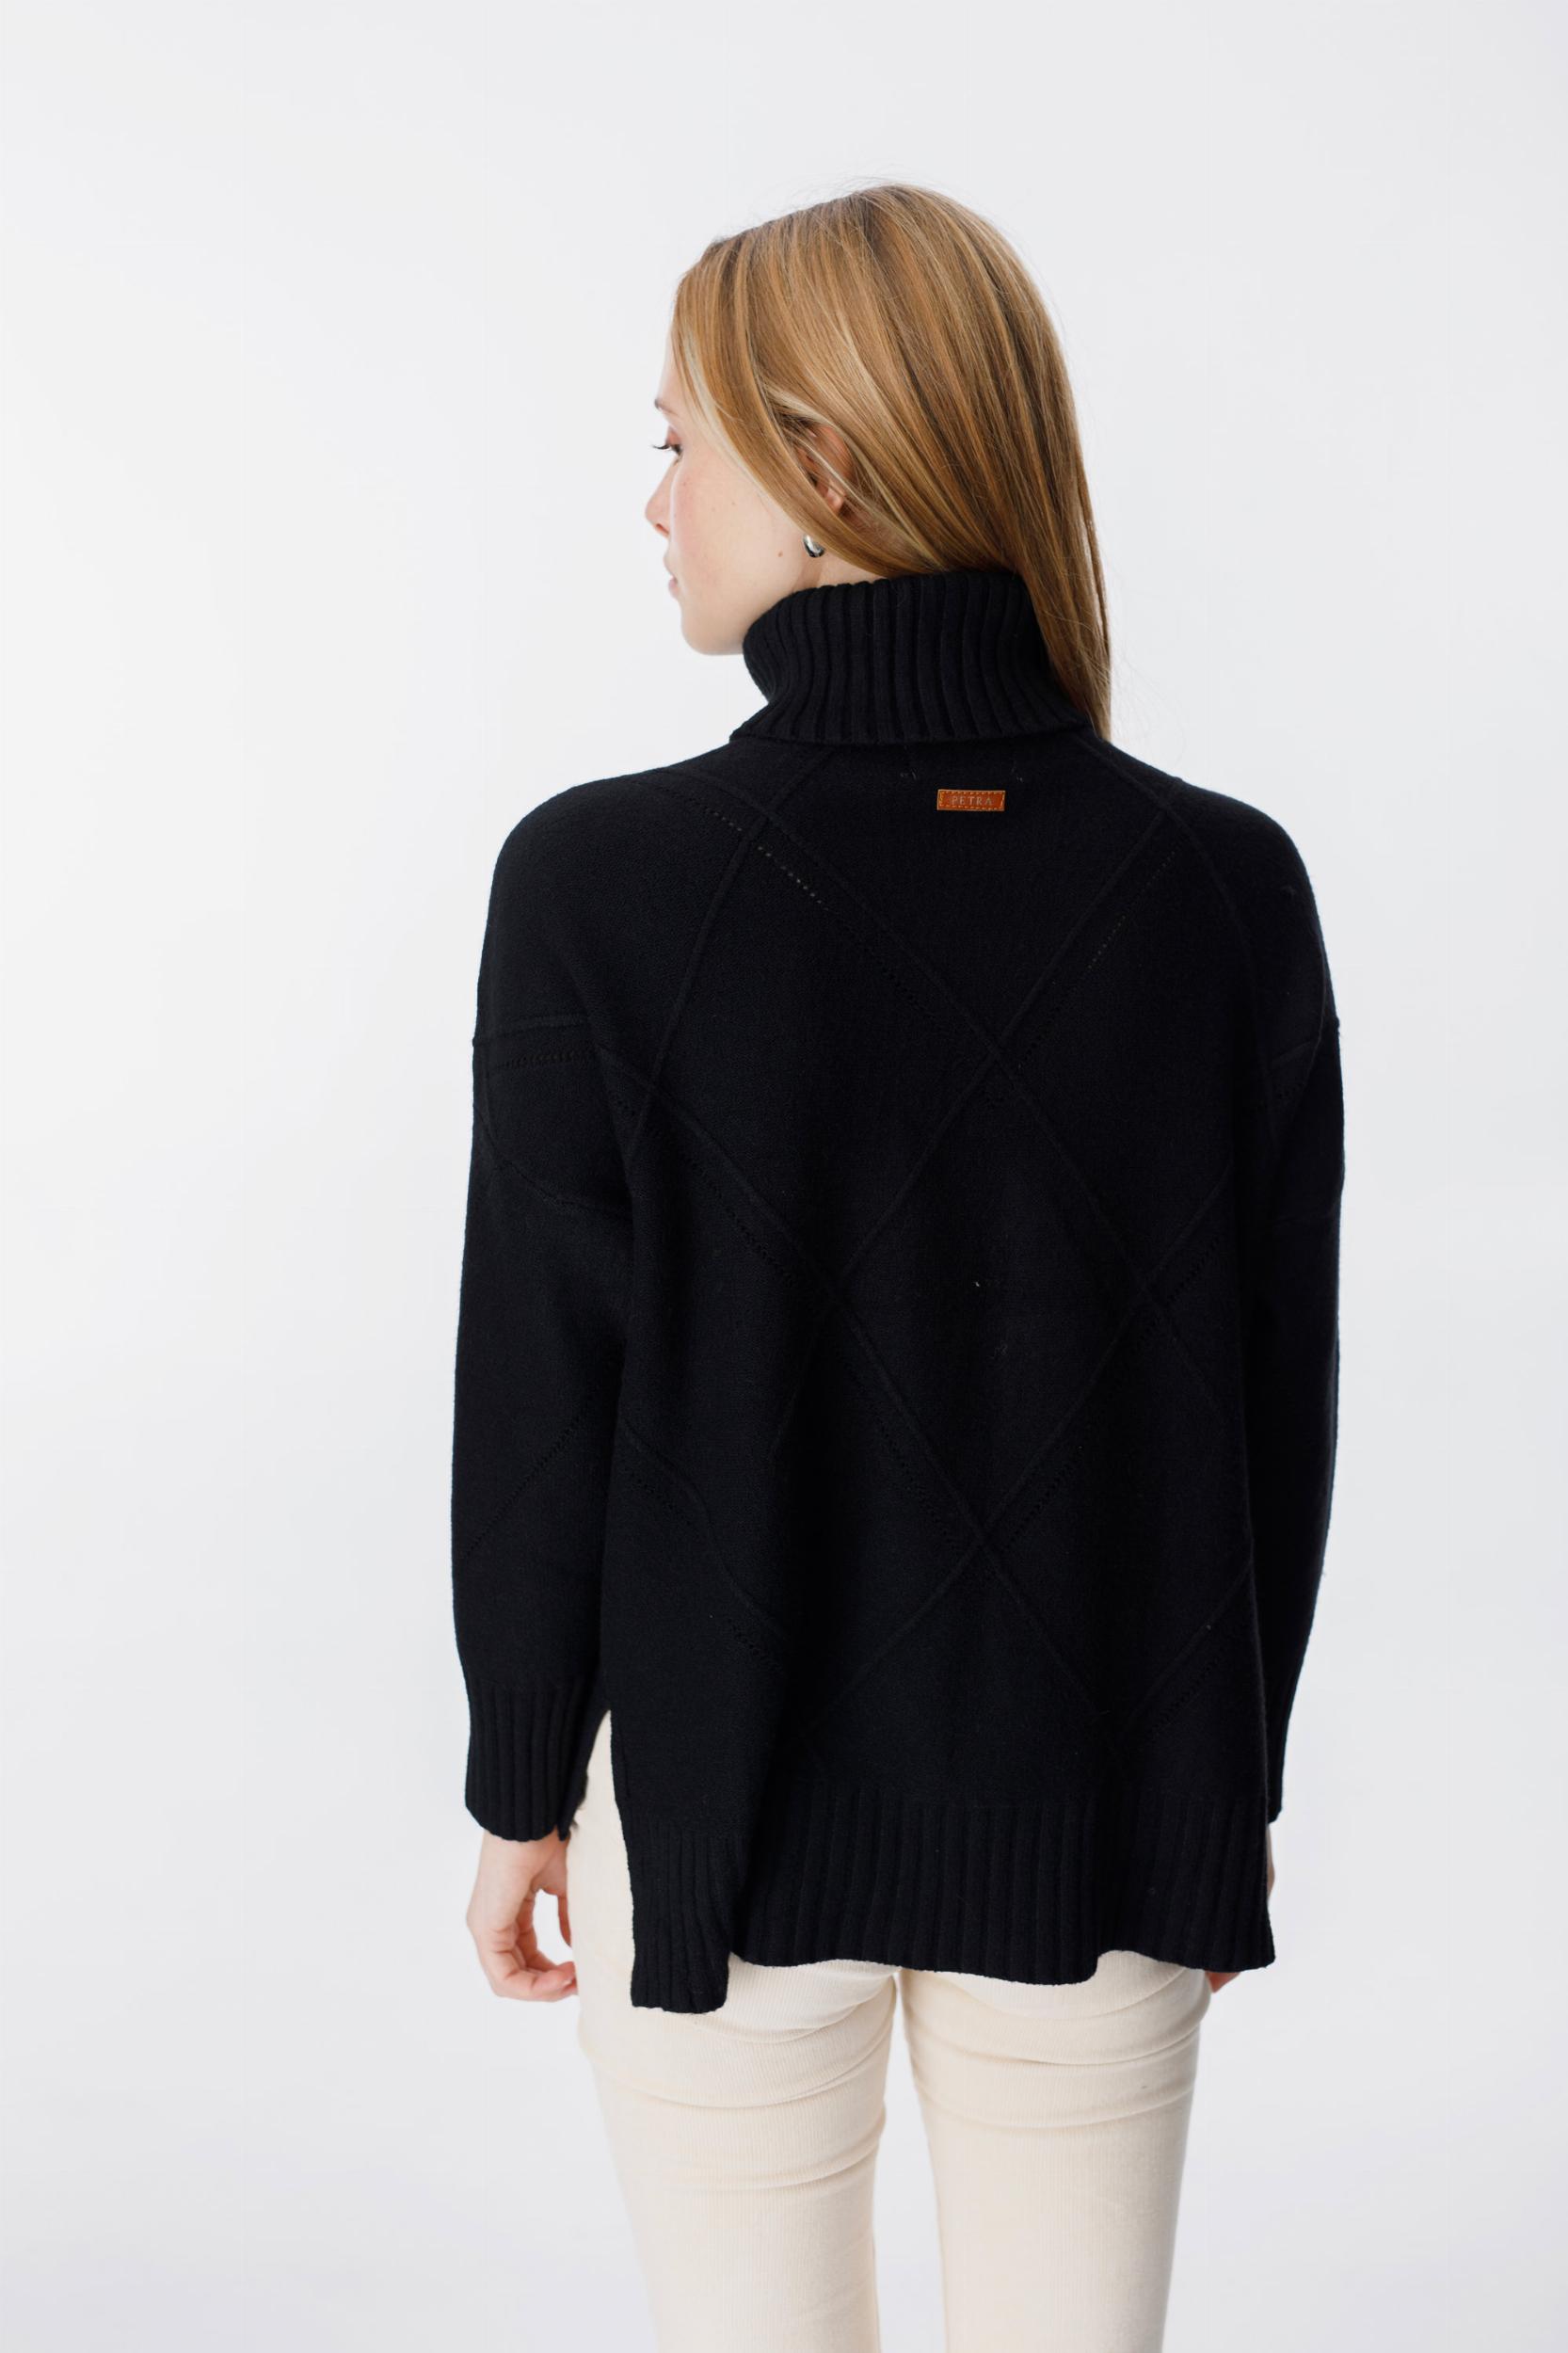 Sweater Mambo negro talle unico